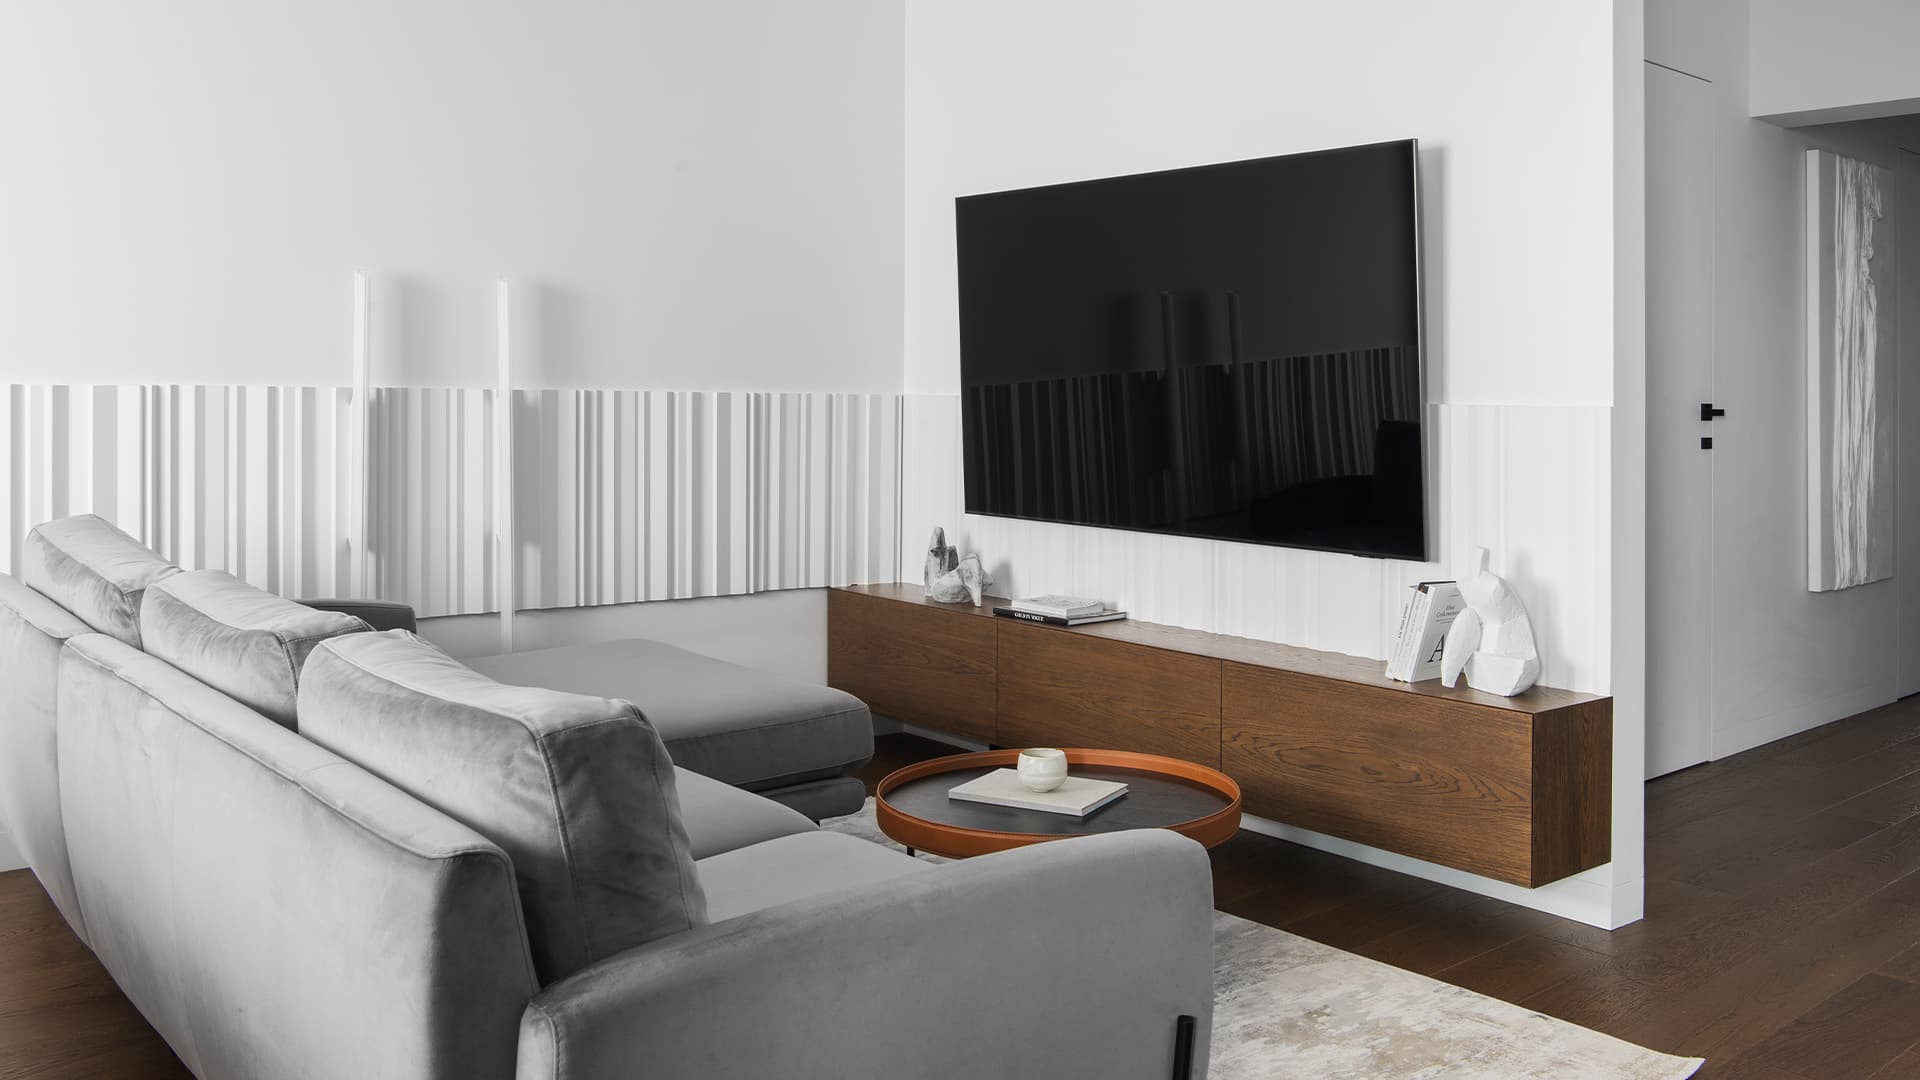 Элегантный интерьер квартиры с нетипичной планировкой — проект студии дизайна BALCON